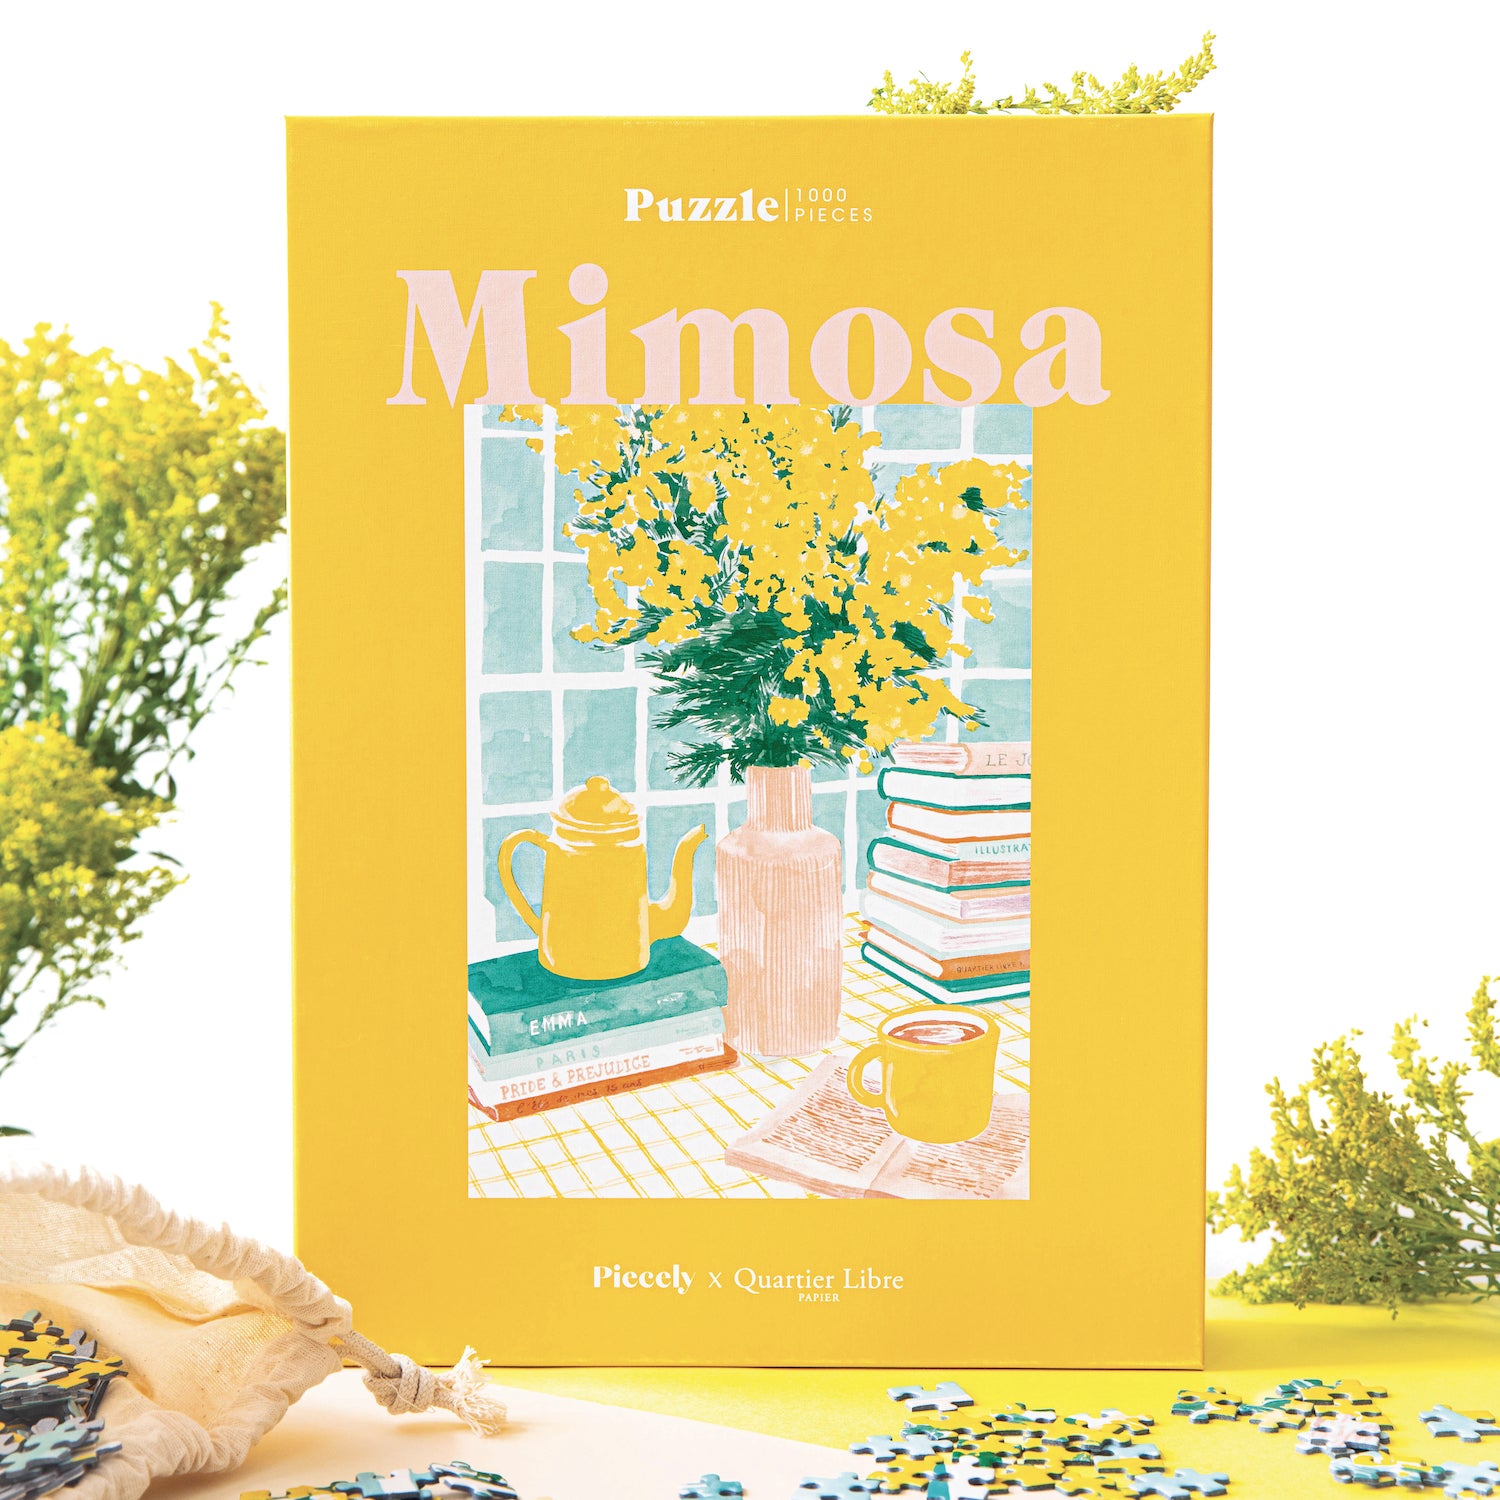 Nachhaltiges, 1000-teiliges Puzzle für Erwachsene, das ein Stillleben bestehend aus einem Strauß Mimosen, einer Tasse Kaffee und Büchern zeigt.